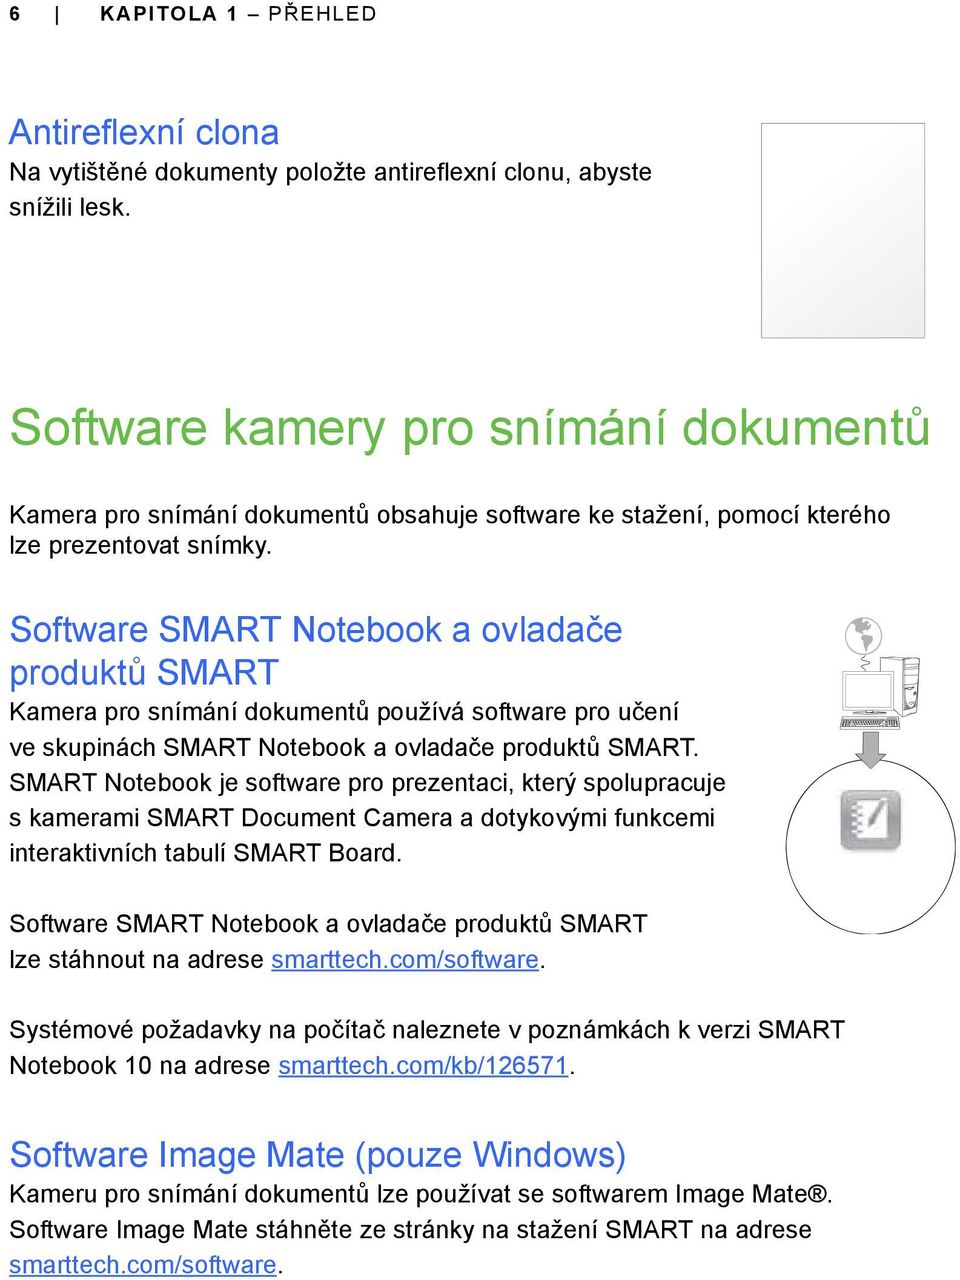 Software SMART Notebook a ovladače produktů SMART Kamera pro snímání dokumentů používá software pro učení ve skupinách SMART Notebook a ovladače produktů SMART.